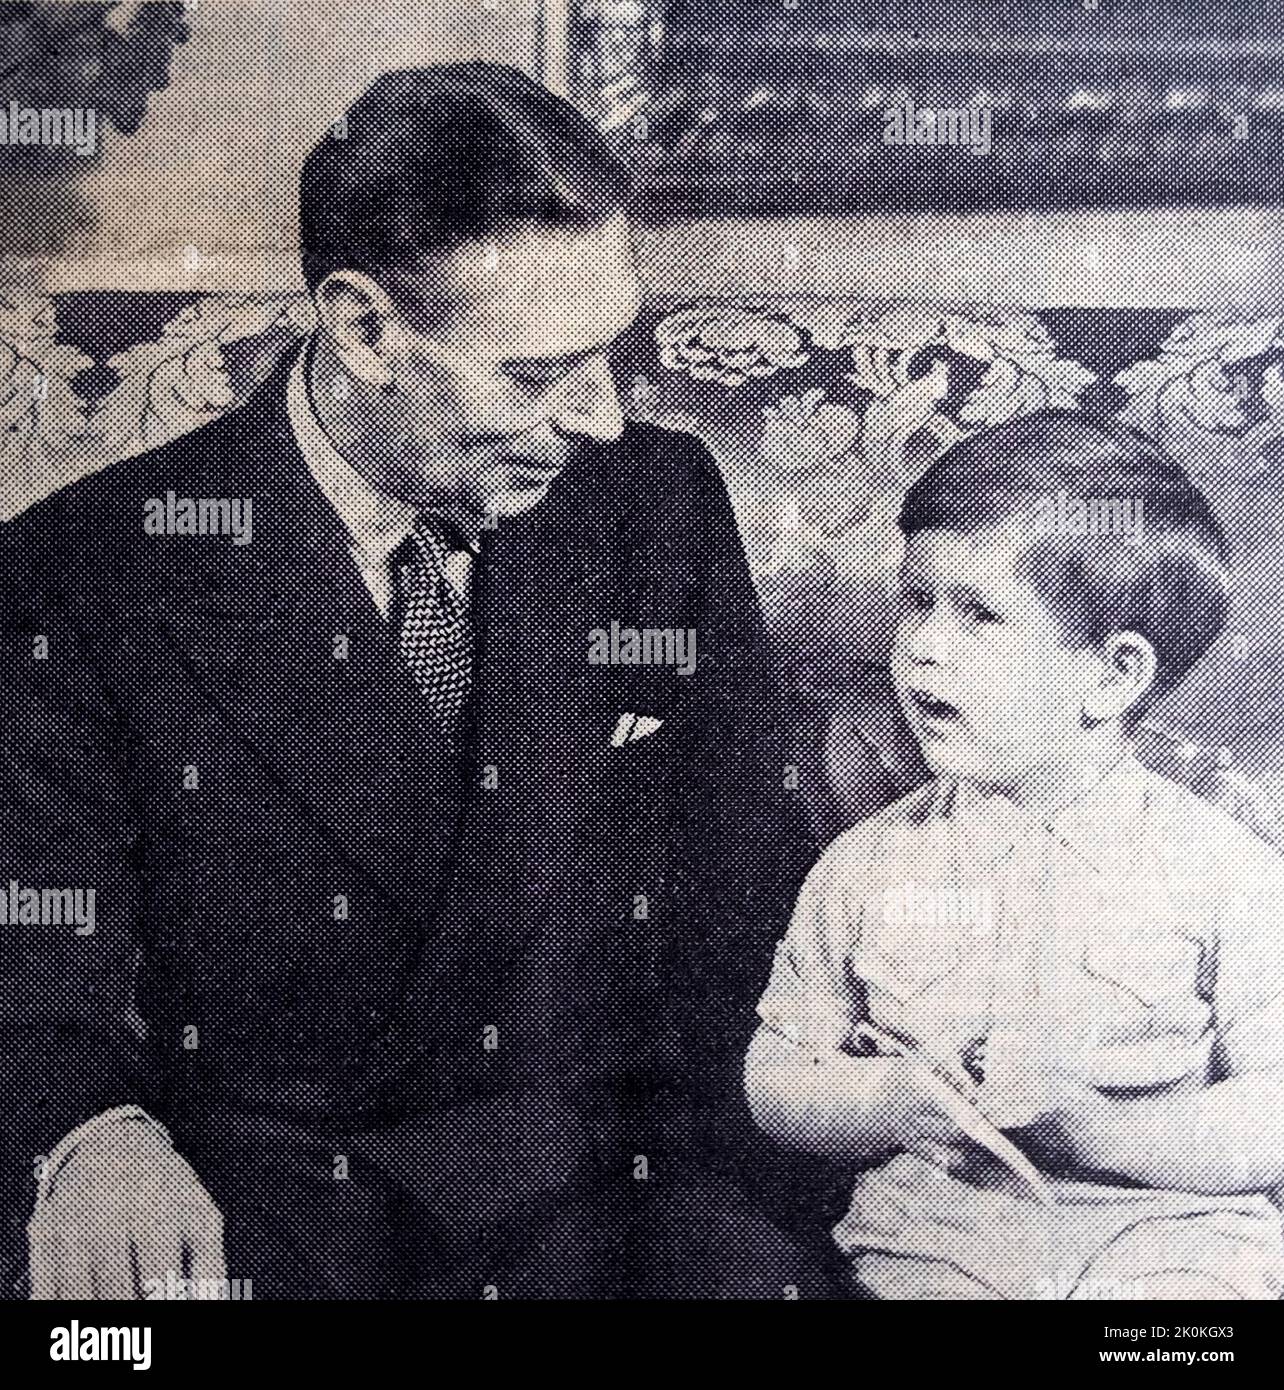 König George VI im Gespräch mit Prinz Charles Kind Jungen im Alter von 3 (jetzt König Charles III) Porträt 1951 in der Times Zeitung London England Großbritannien Stockfoto